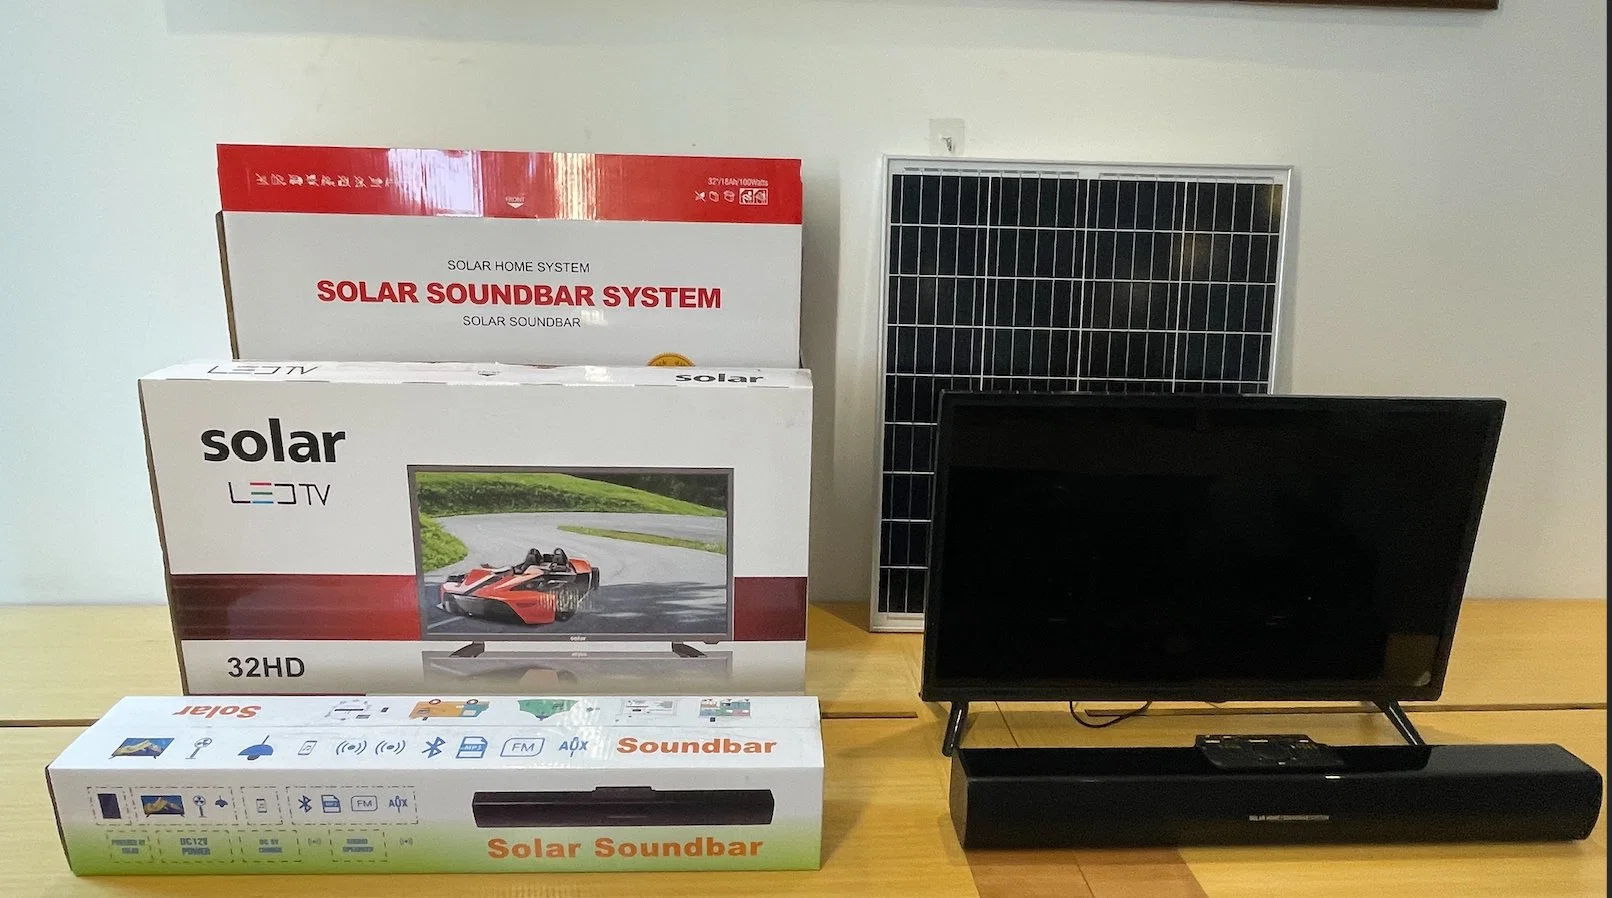 Kit Solar sistema de TV Solar Soundbar sistema de iluminação Solar para Armazenamento e fornecimento de Energia solar